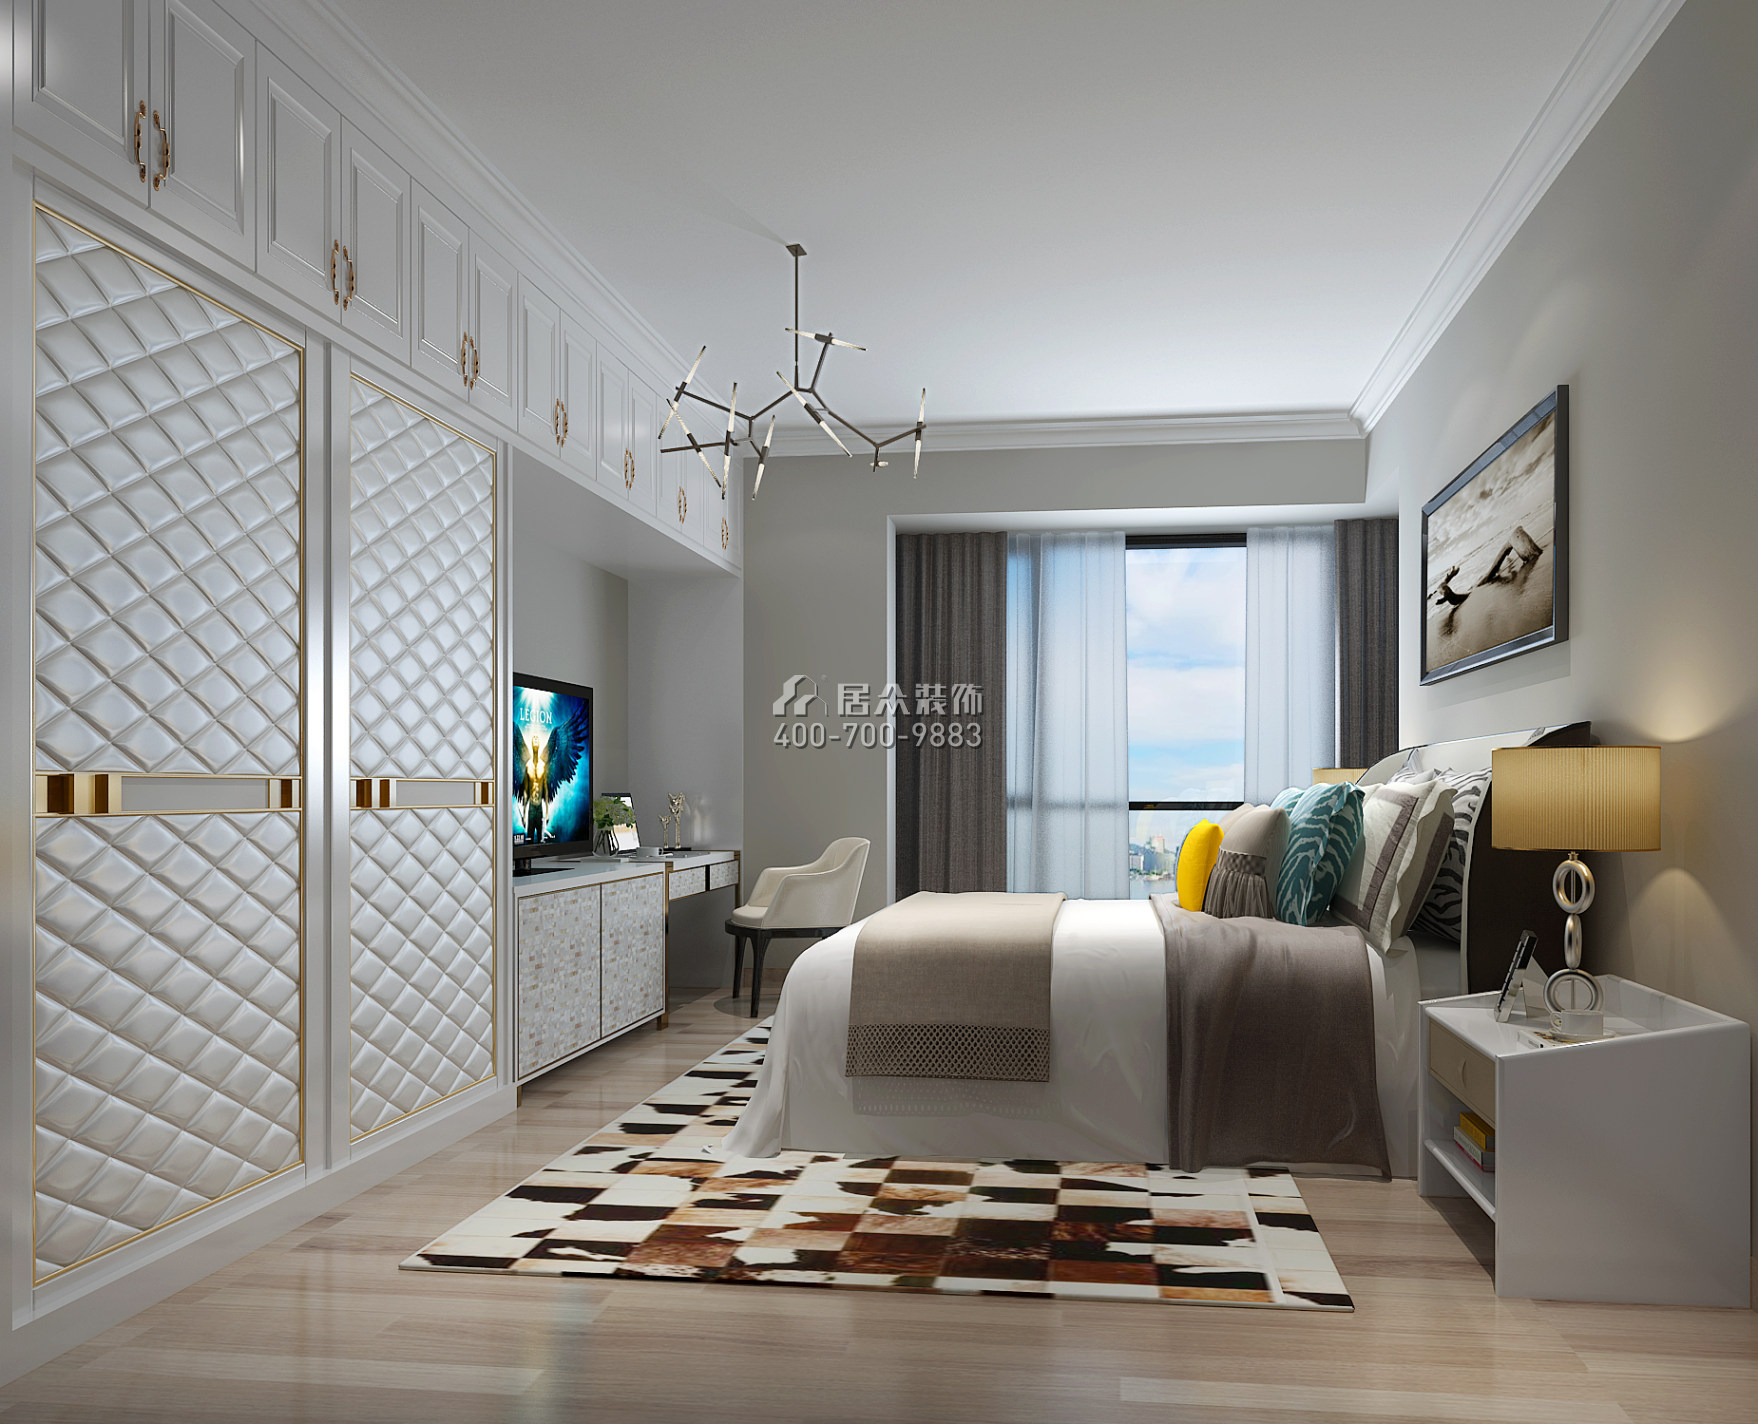 維港半島142平方米現代簡約風格平層戶型臥室裝修效果圖